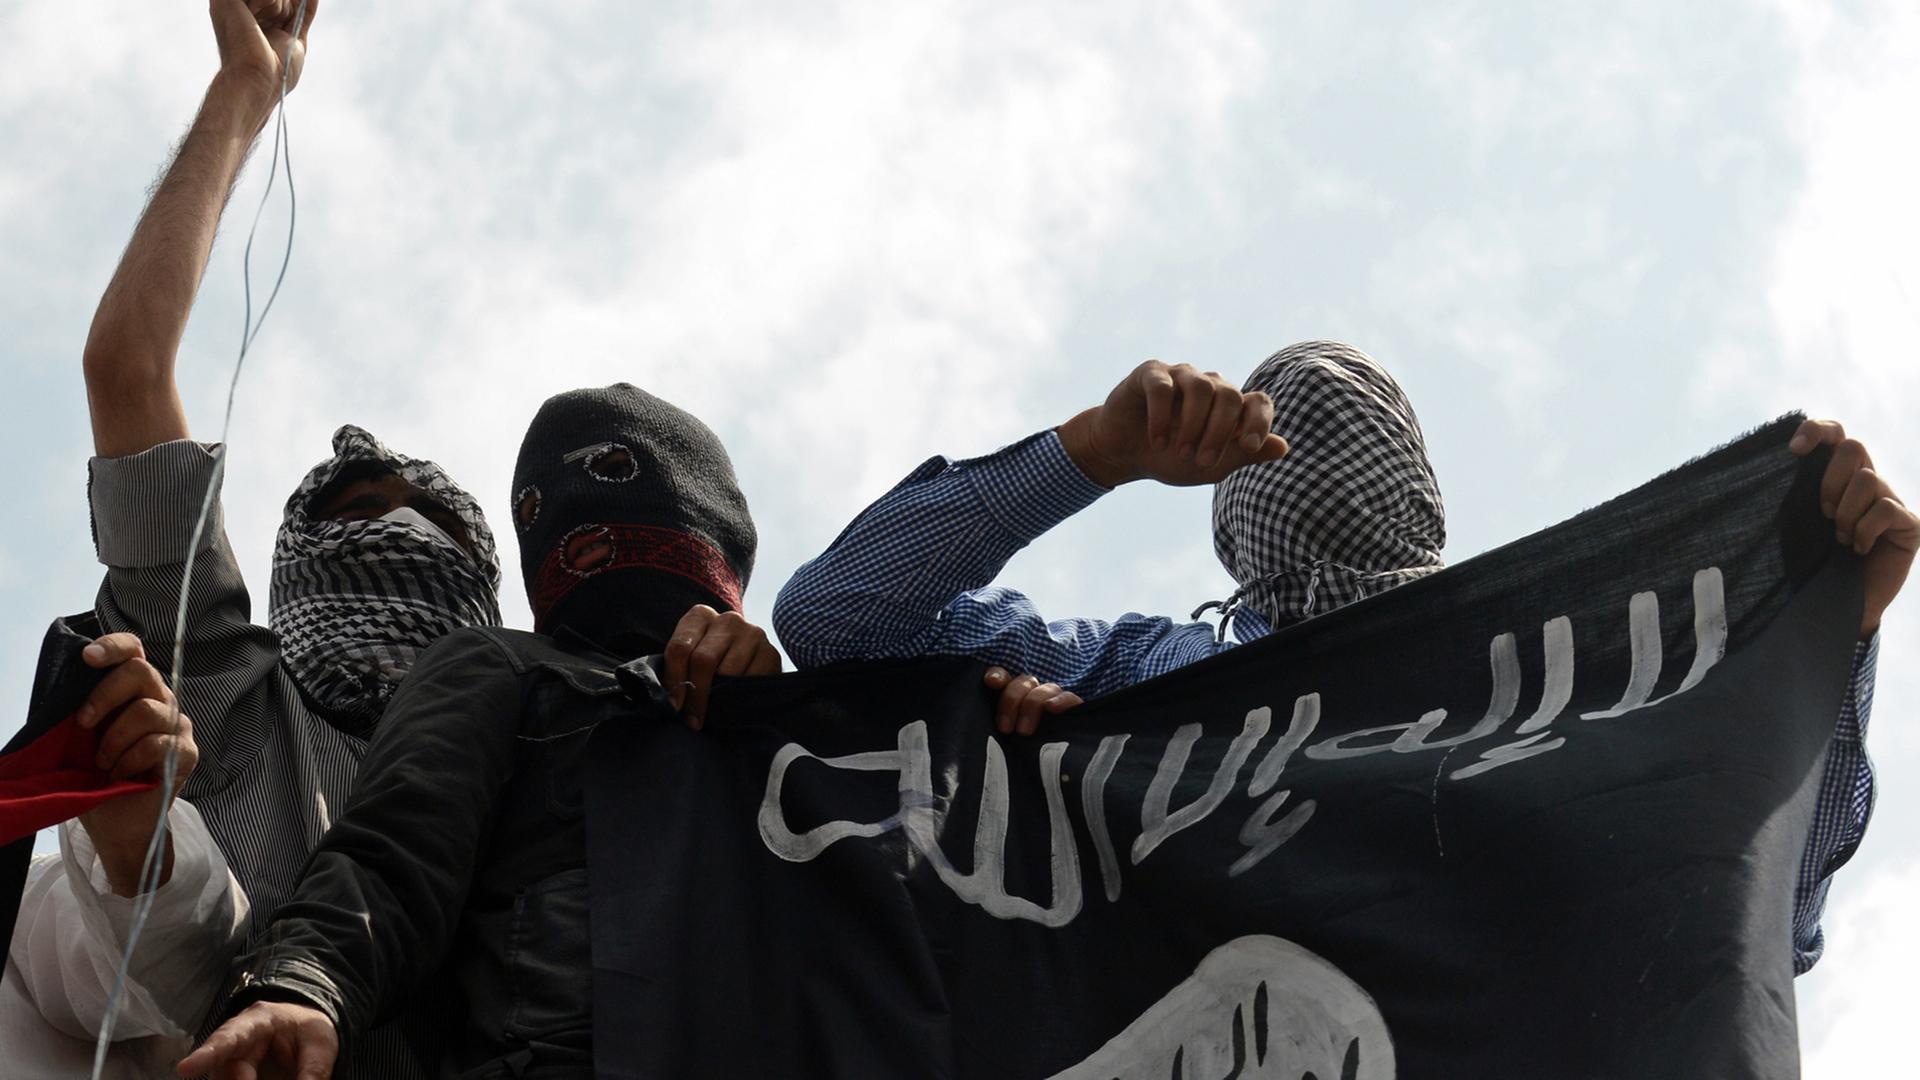 Unterstützer der Extremistenmiliz Islamischer Staat (IS) mit Fahne.